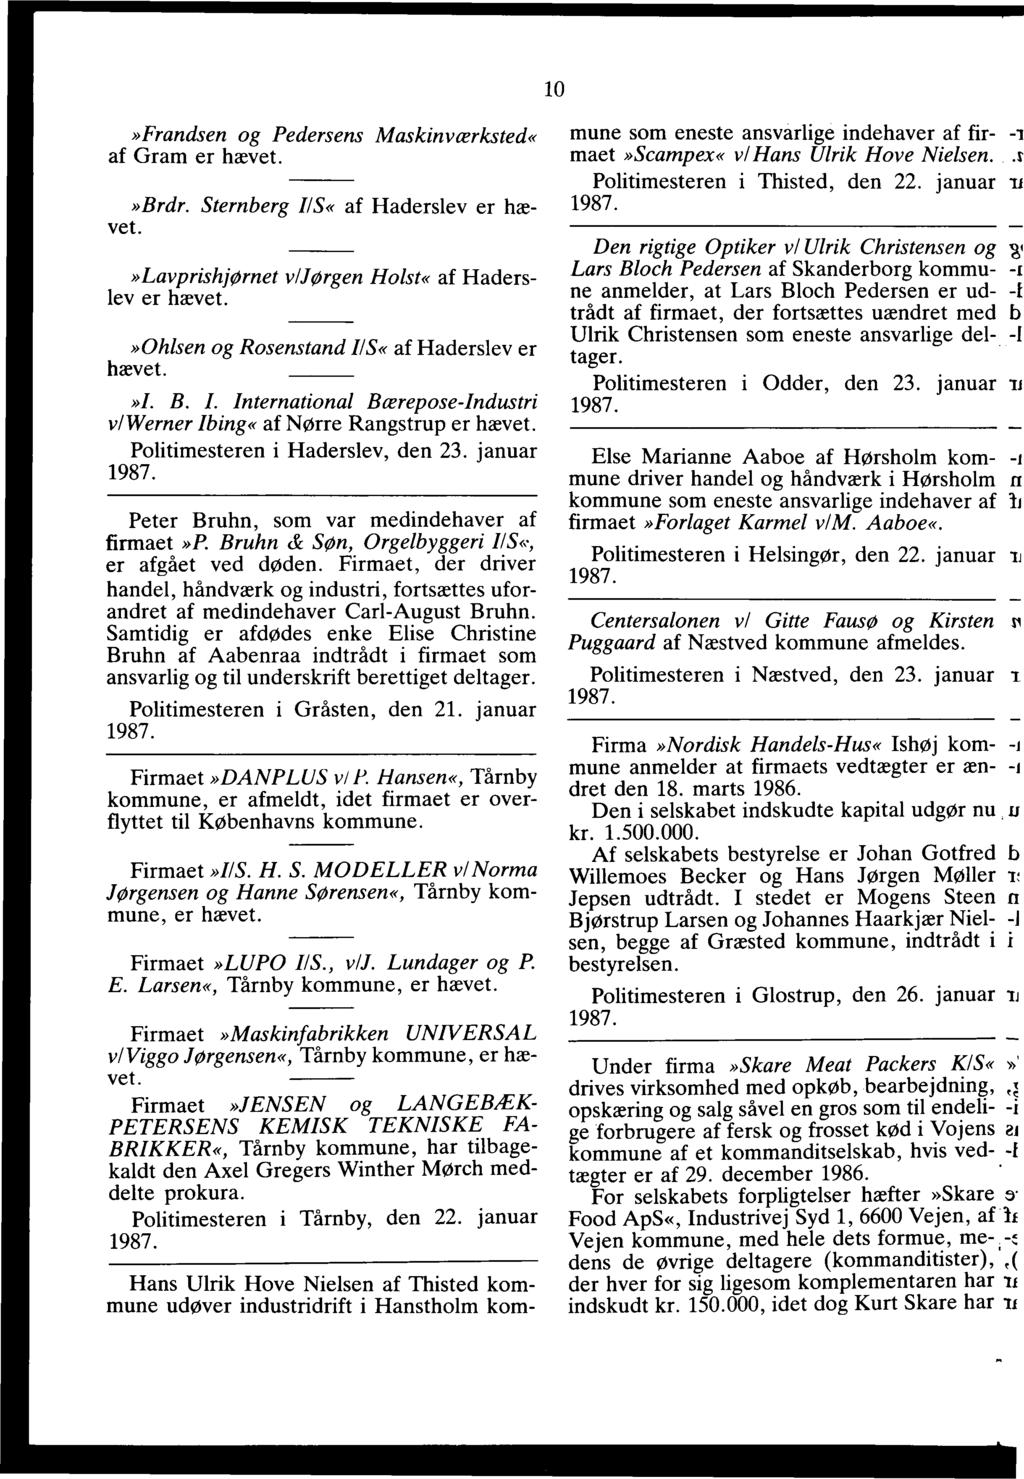 1987 Anmeldelser, bekendtgjort i Statstidende i januar måned N r. 1 - PDF  Gratis download